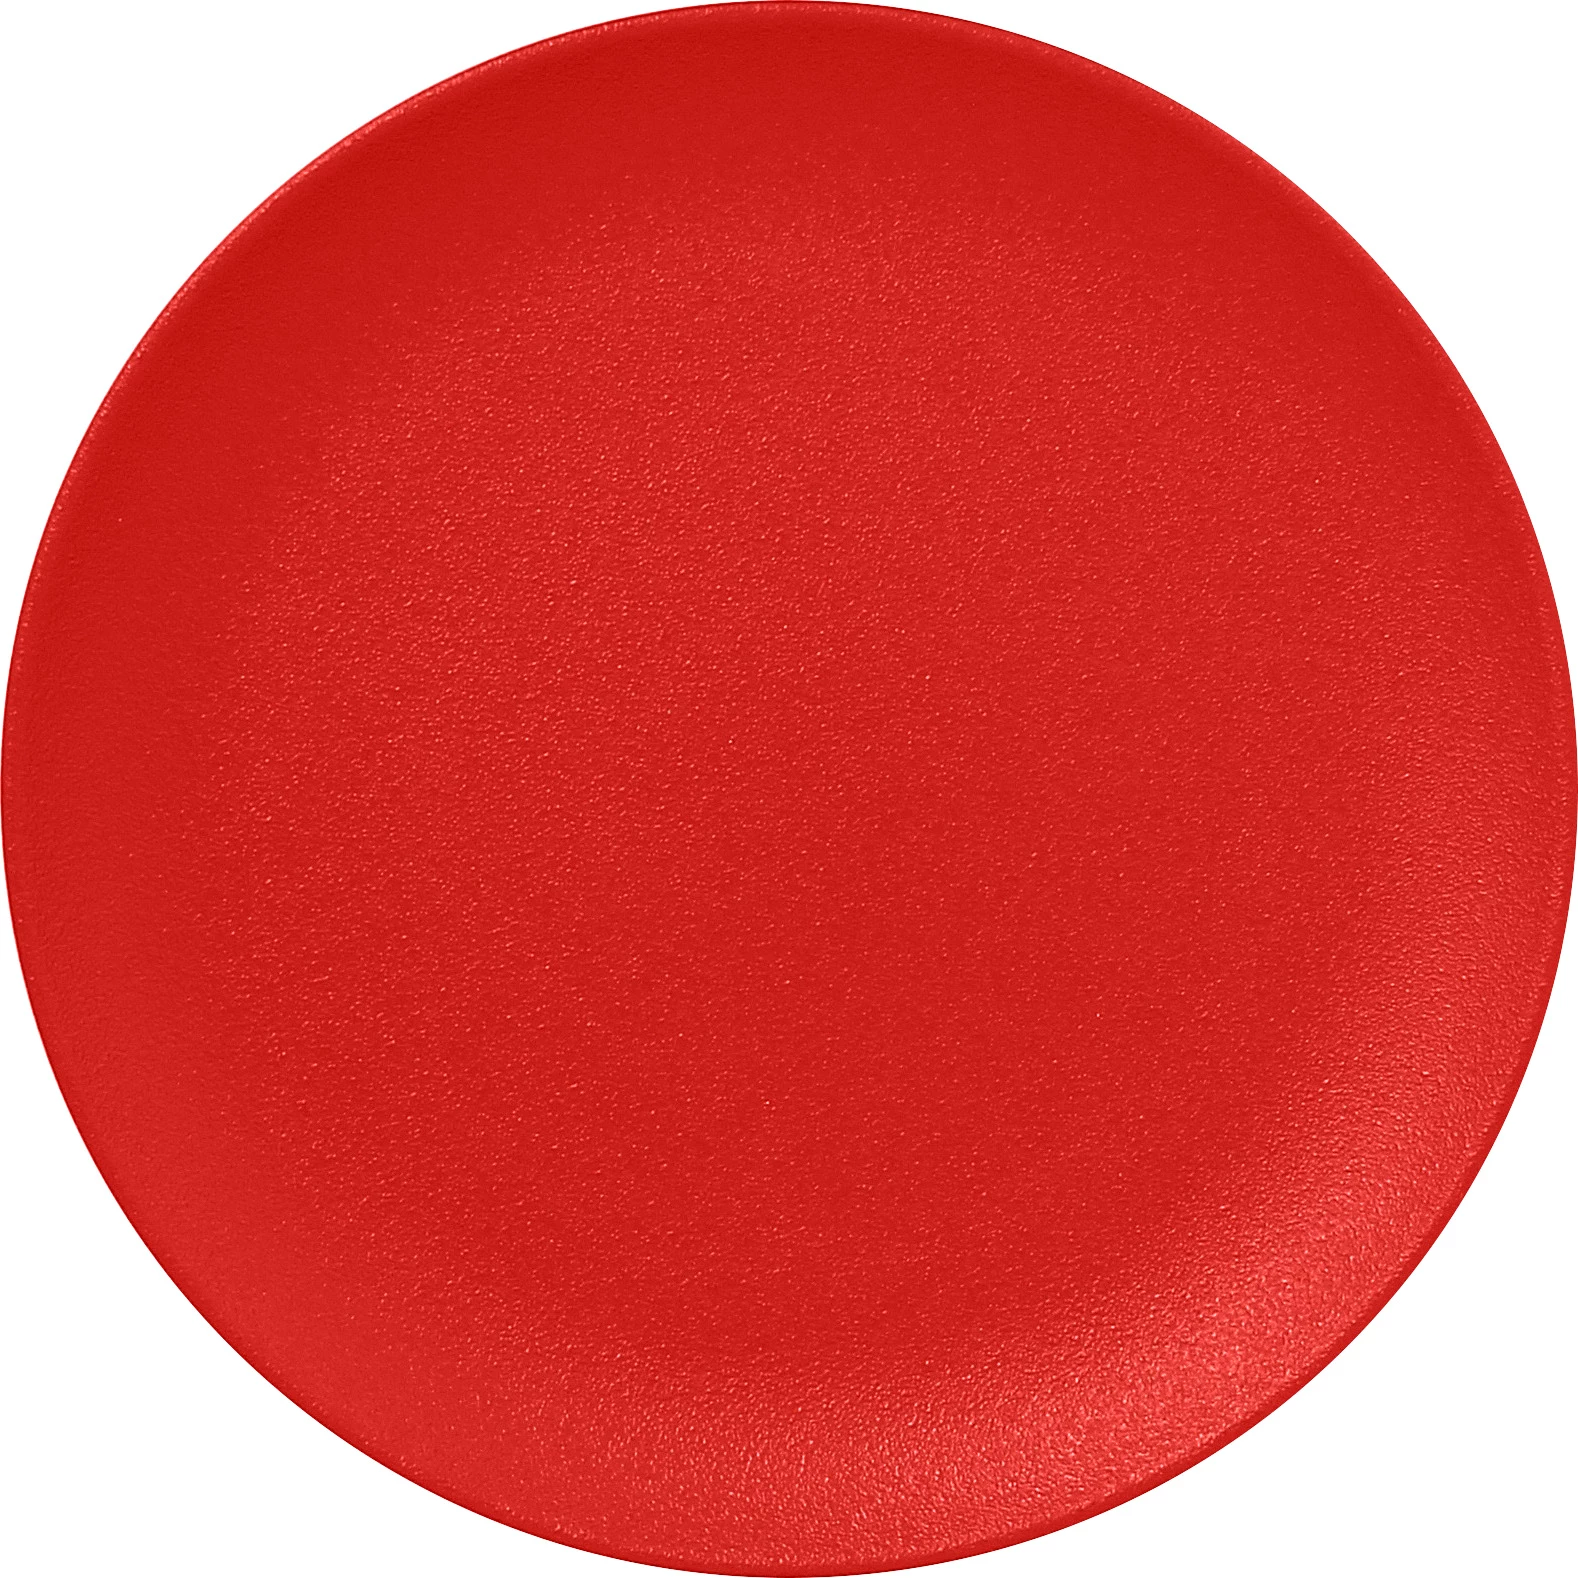 RAK Neofusion flad tallerken uden fane, rød, ø15 cm